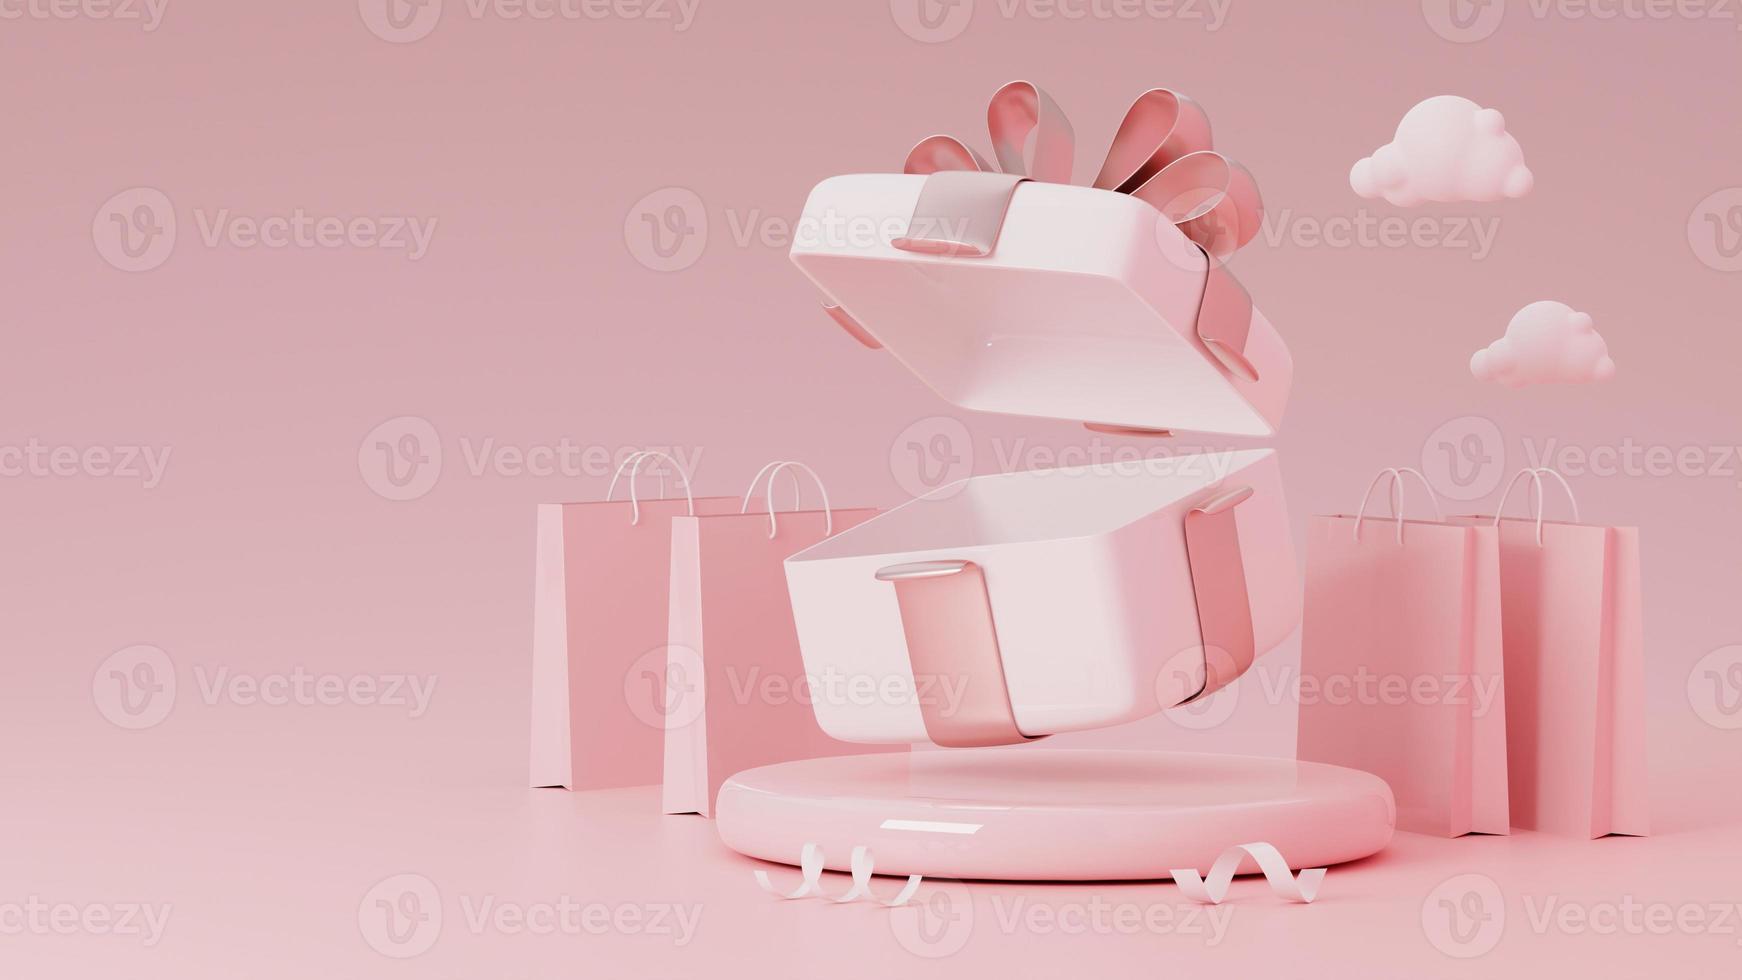 öppen fyrkantig tom presentförpackning på rosa glansigt podium med kopia utrymme. 3d-rendering foto